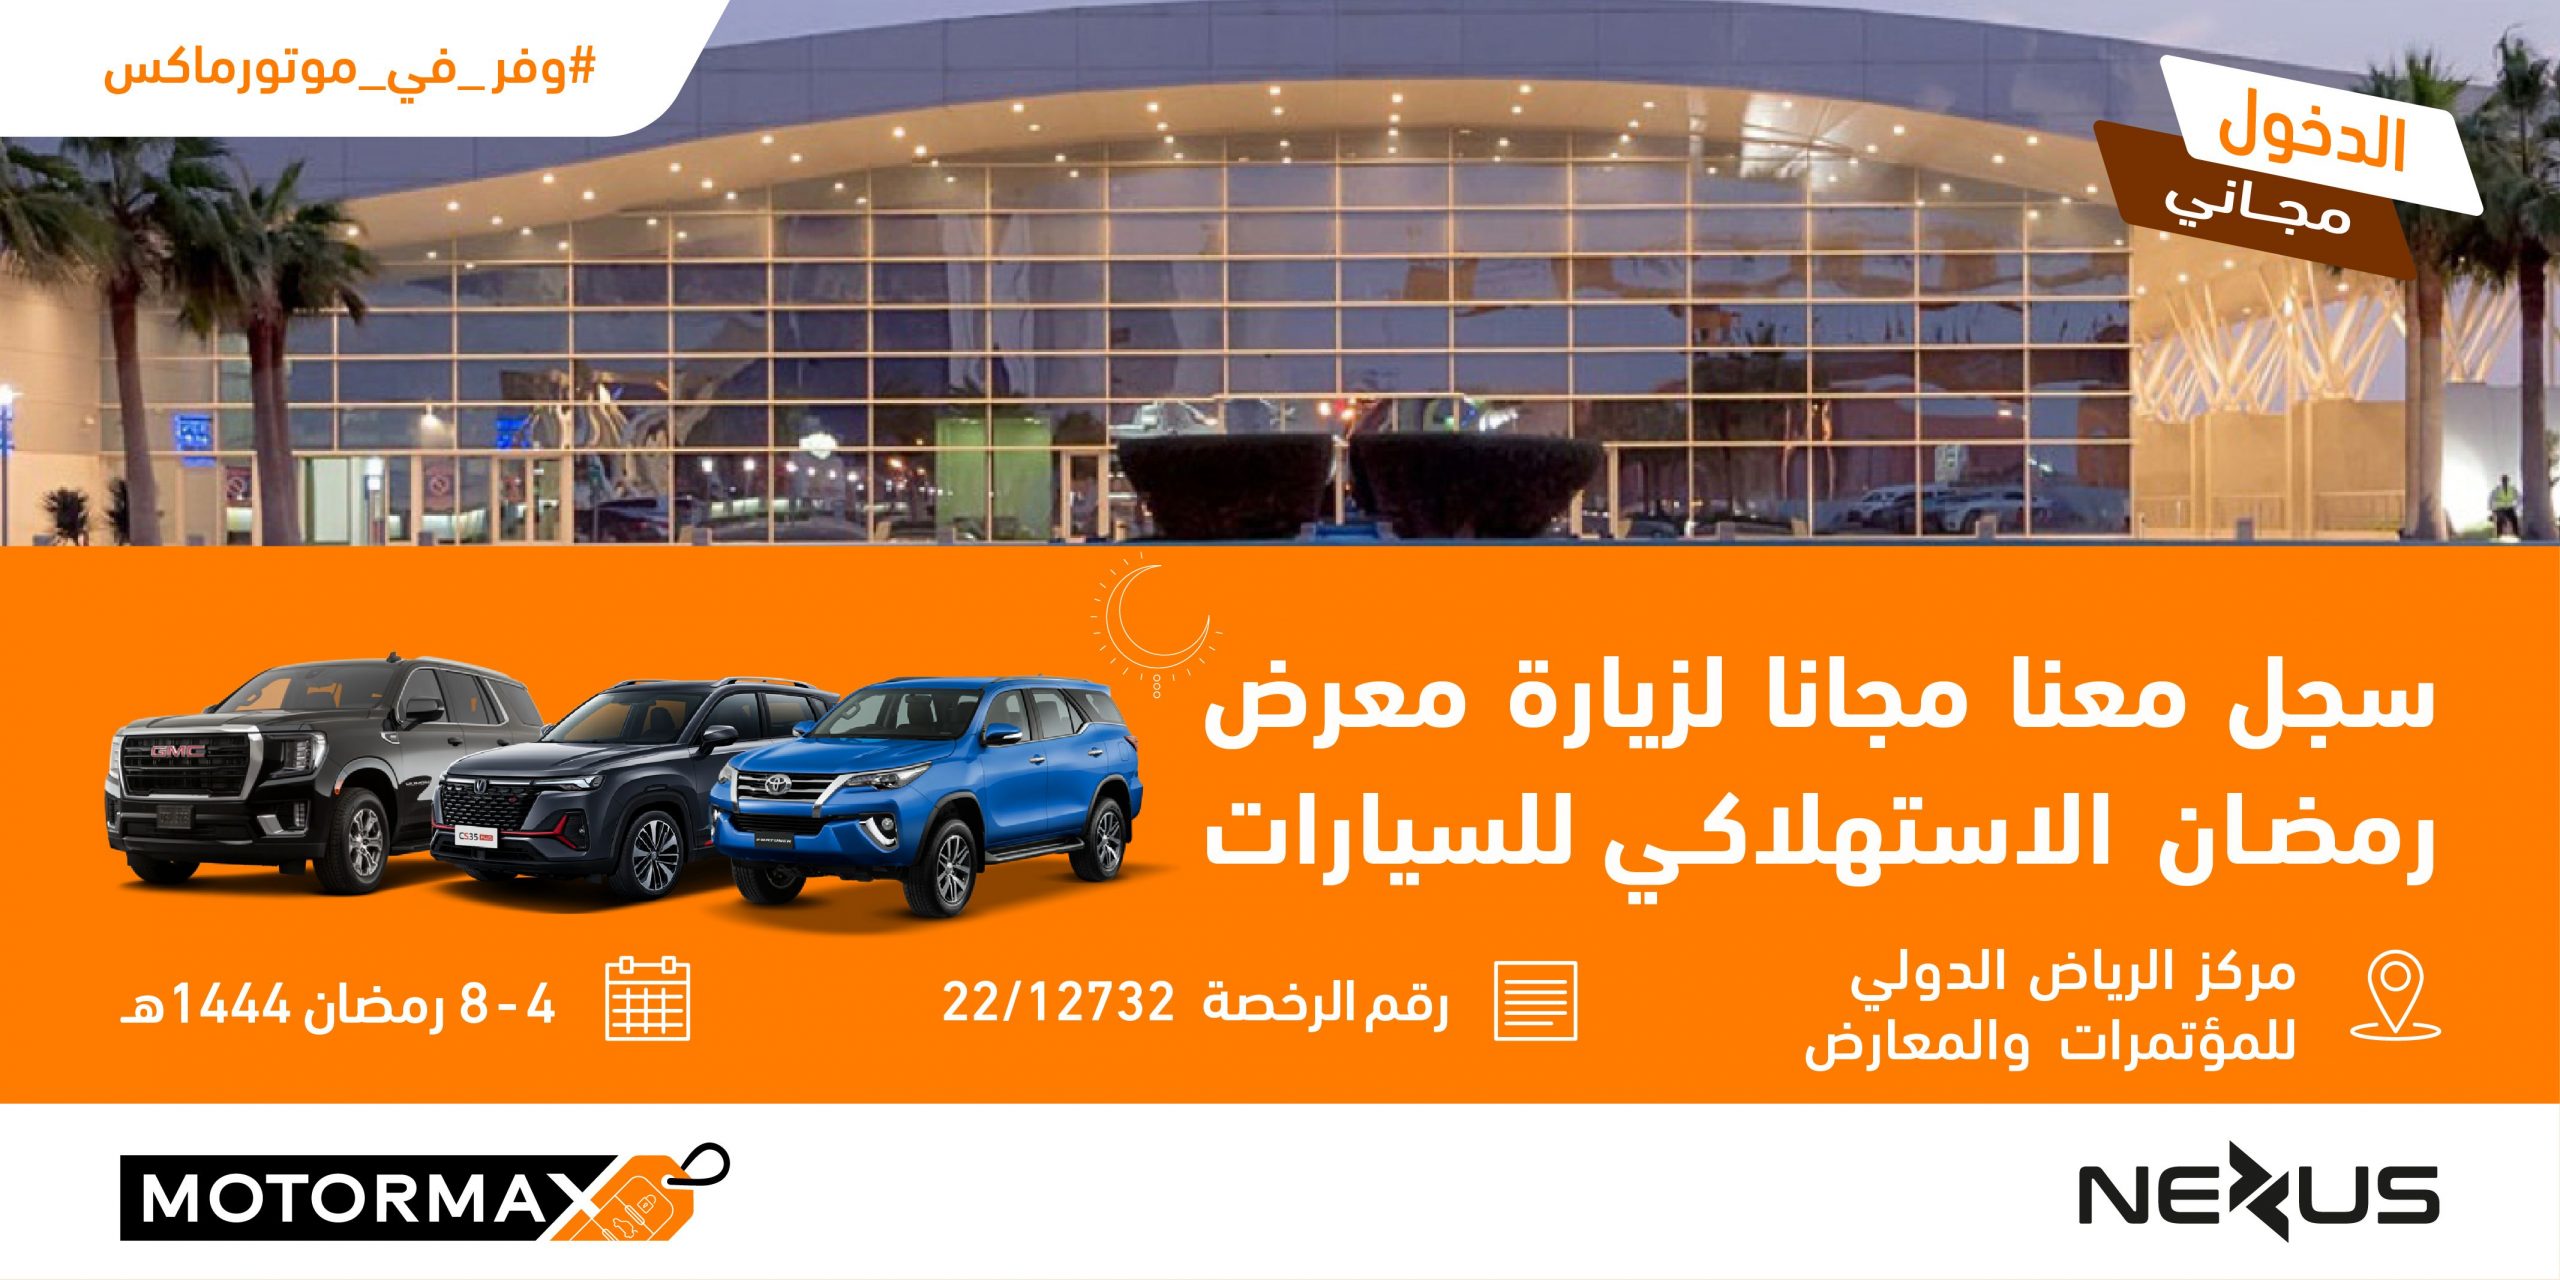 معرض رمضان الاستهلاكي للسيارات "موتورماكس" يستقبل زواره خلال شهر رمضان المبارك في مركز الرياض الدولي للمؤتمرات والمعارض 24